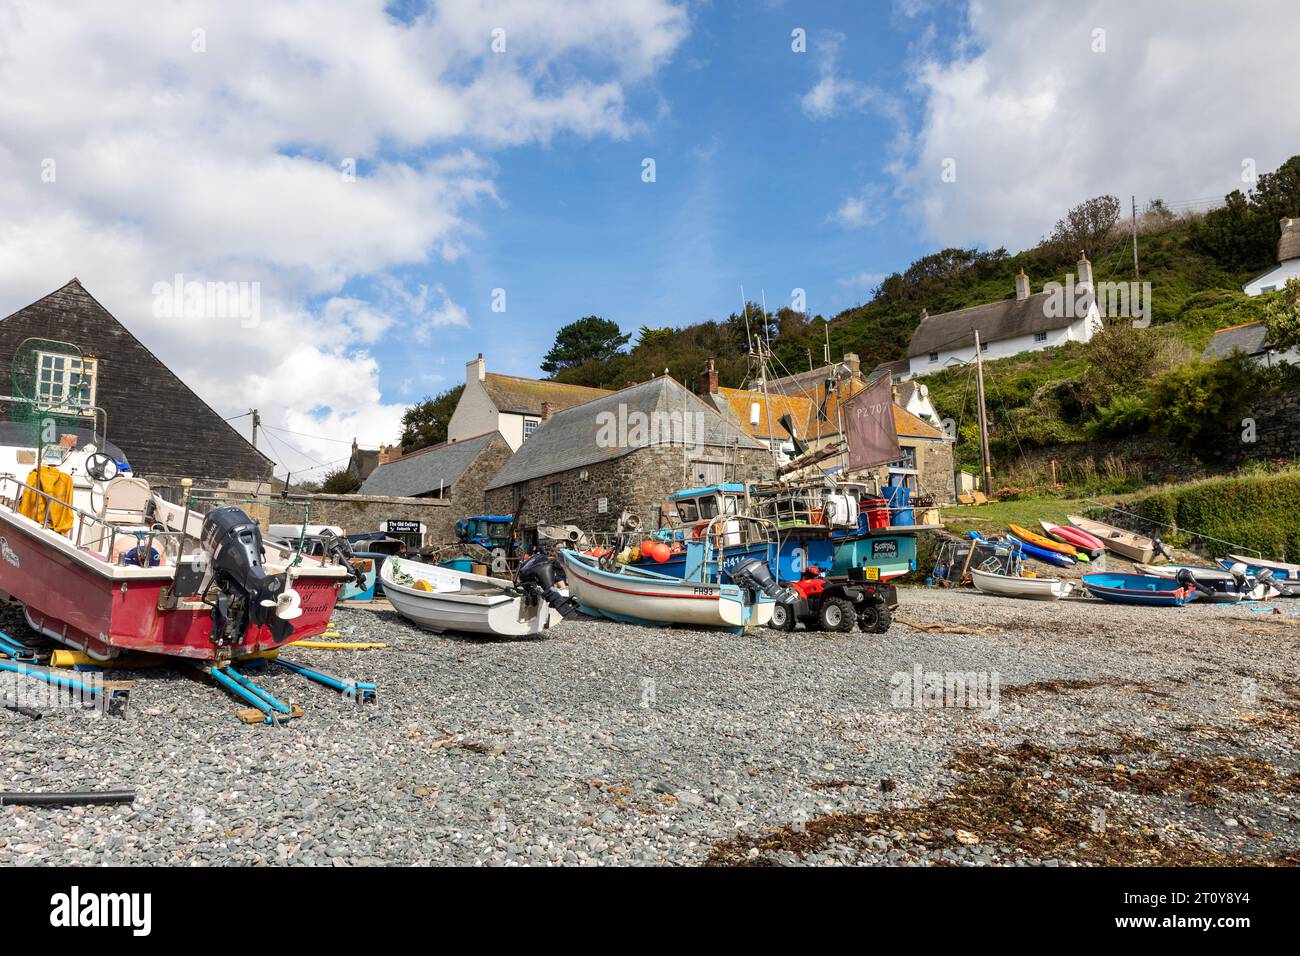 Cadgwith, villaggio sulla penisola di Lizard, Cornovaglia, Inghilterra, con barche da pesca e barche sulla spiaggia della baia Foto Stock